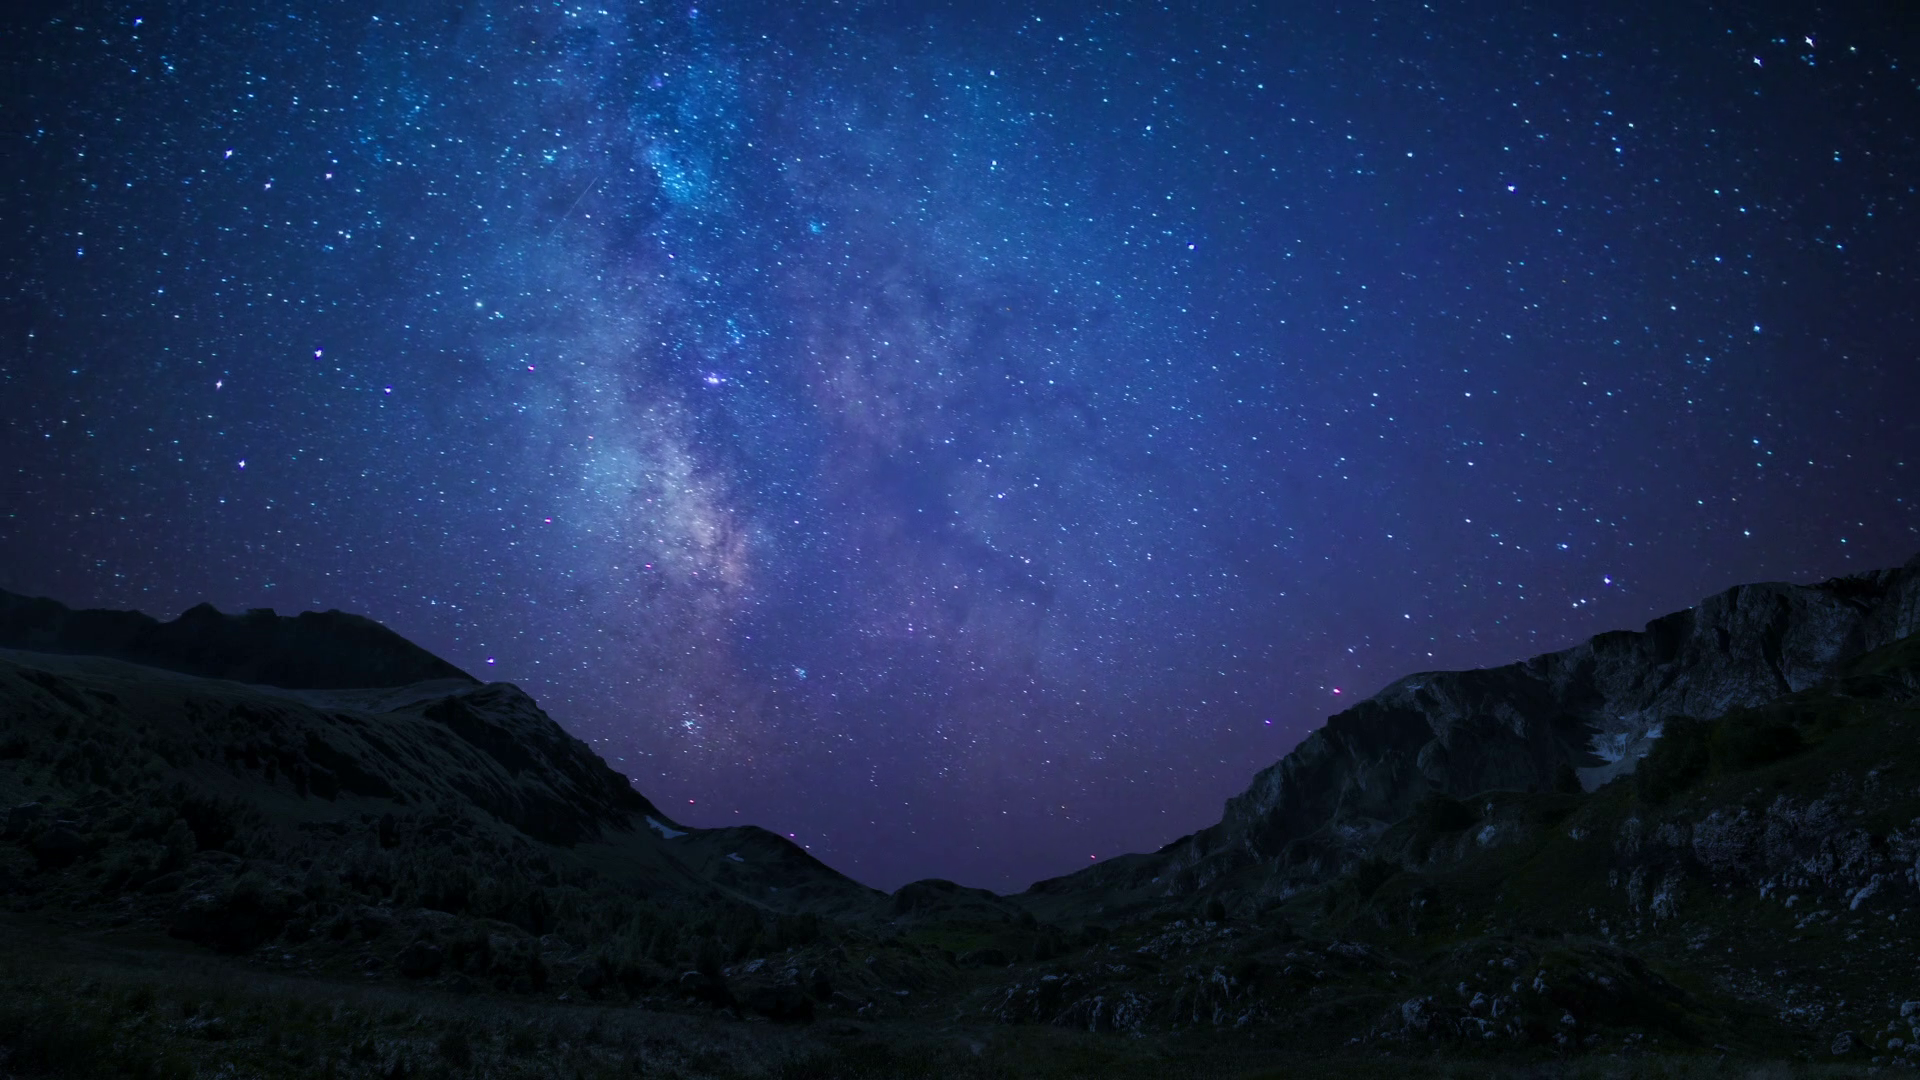 Night Sky Stars Milkyway On Mountains Background - Starry Sky Background, Transparent background PNG HD thumbnail